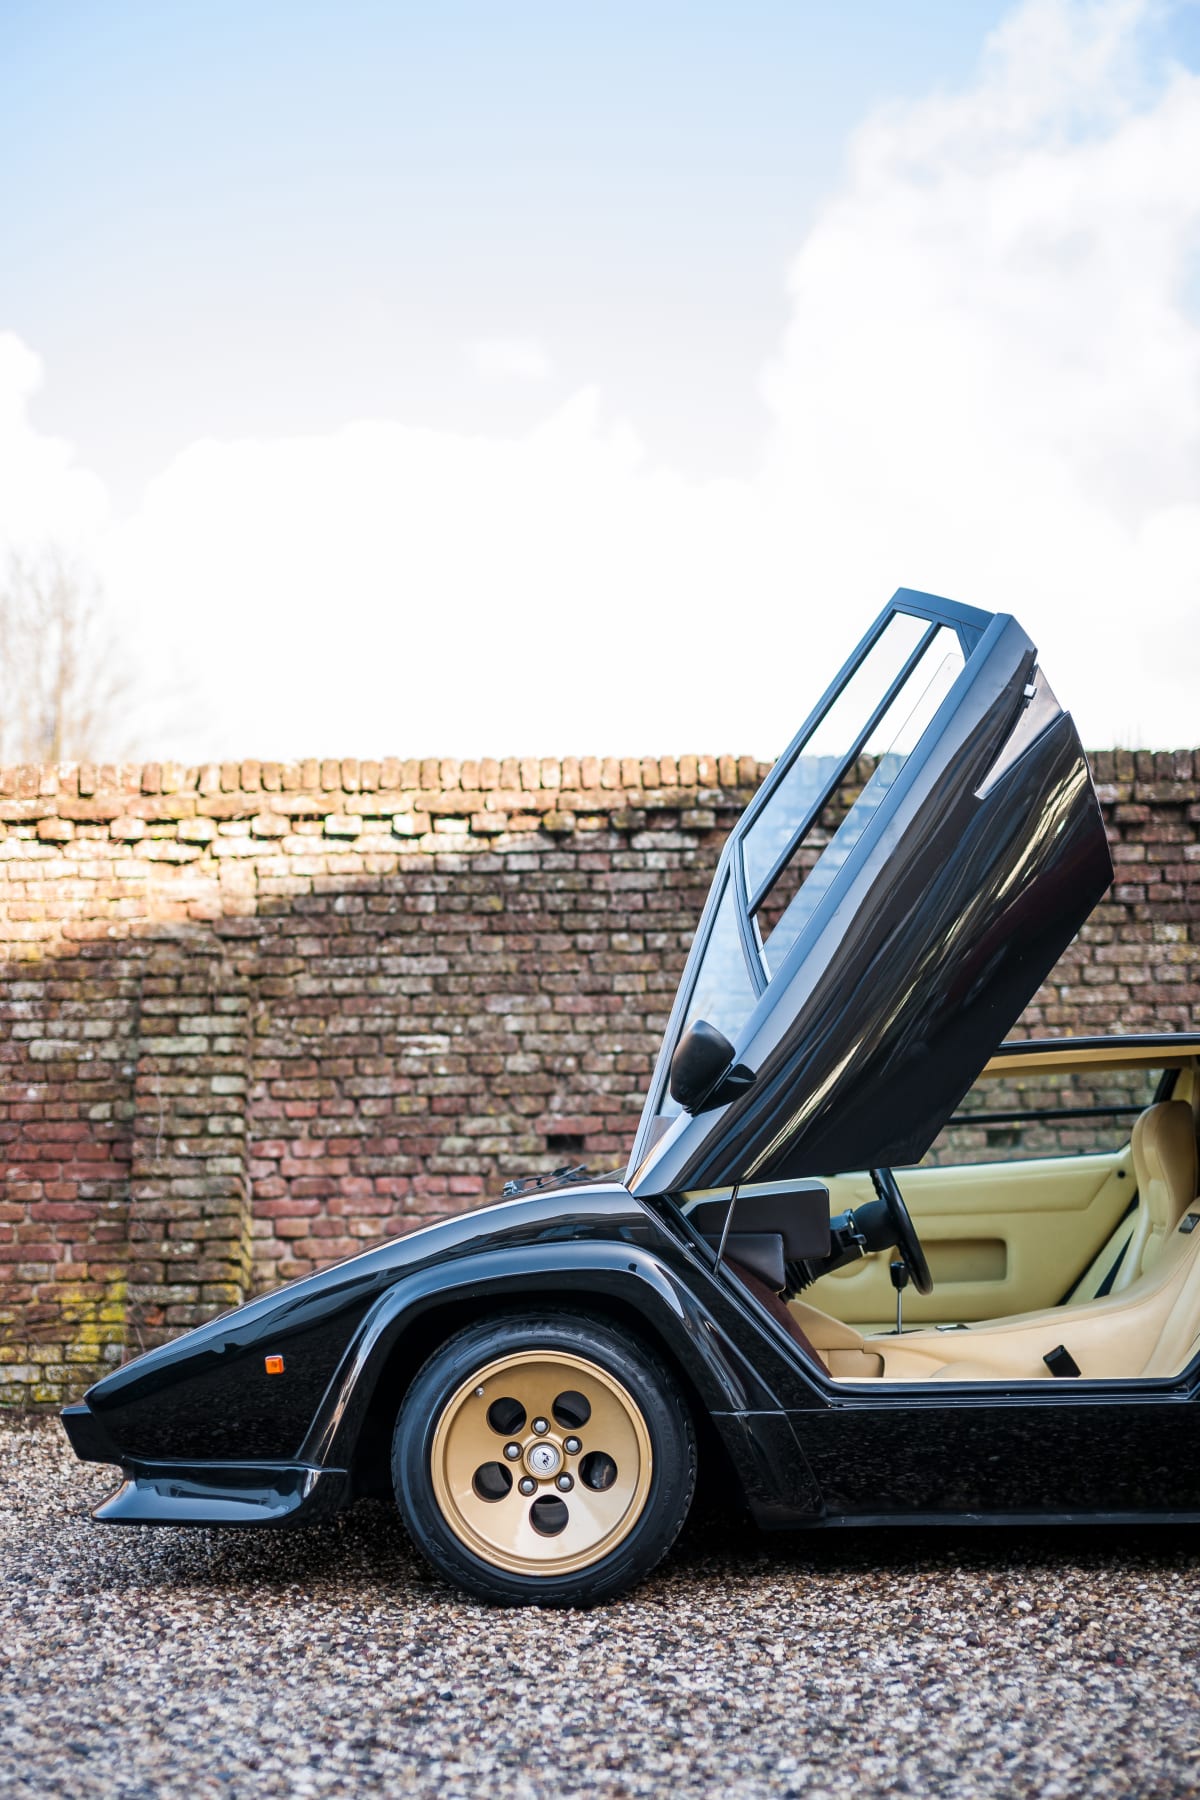 Lamborghini Countach se stalo synonymem supersportovního auta 70. a 80. let. Jezdili jsme "okřídleným" provedením 500 S z roku 1981. Lamborghini Countach  LP 5000 S z roku 1985.